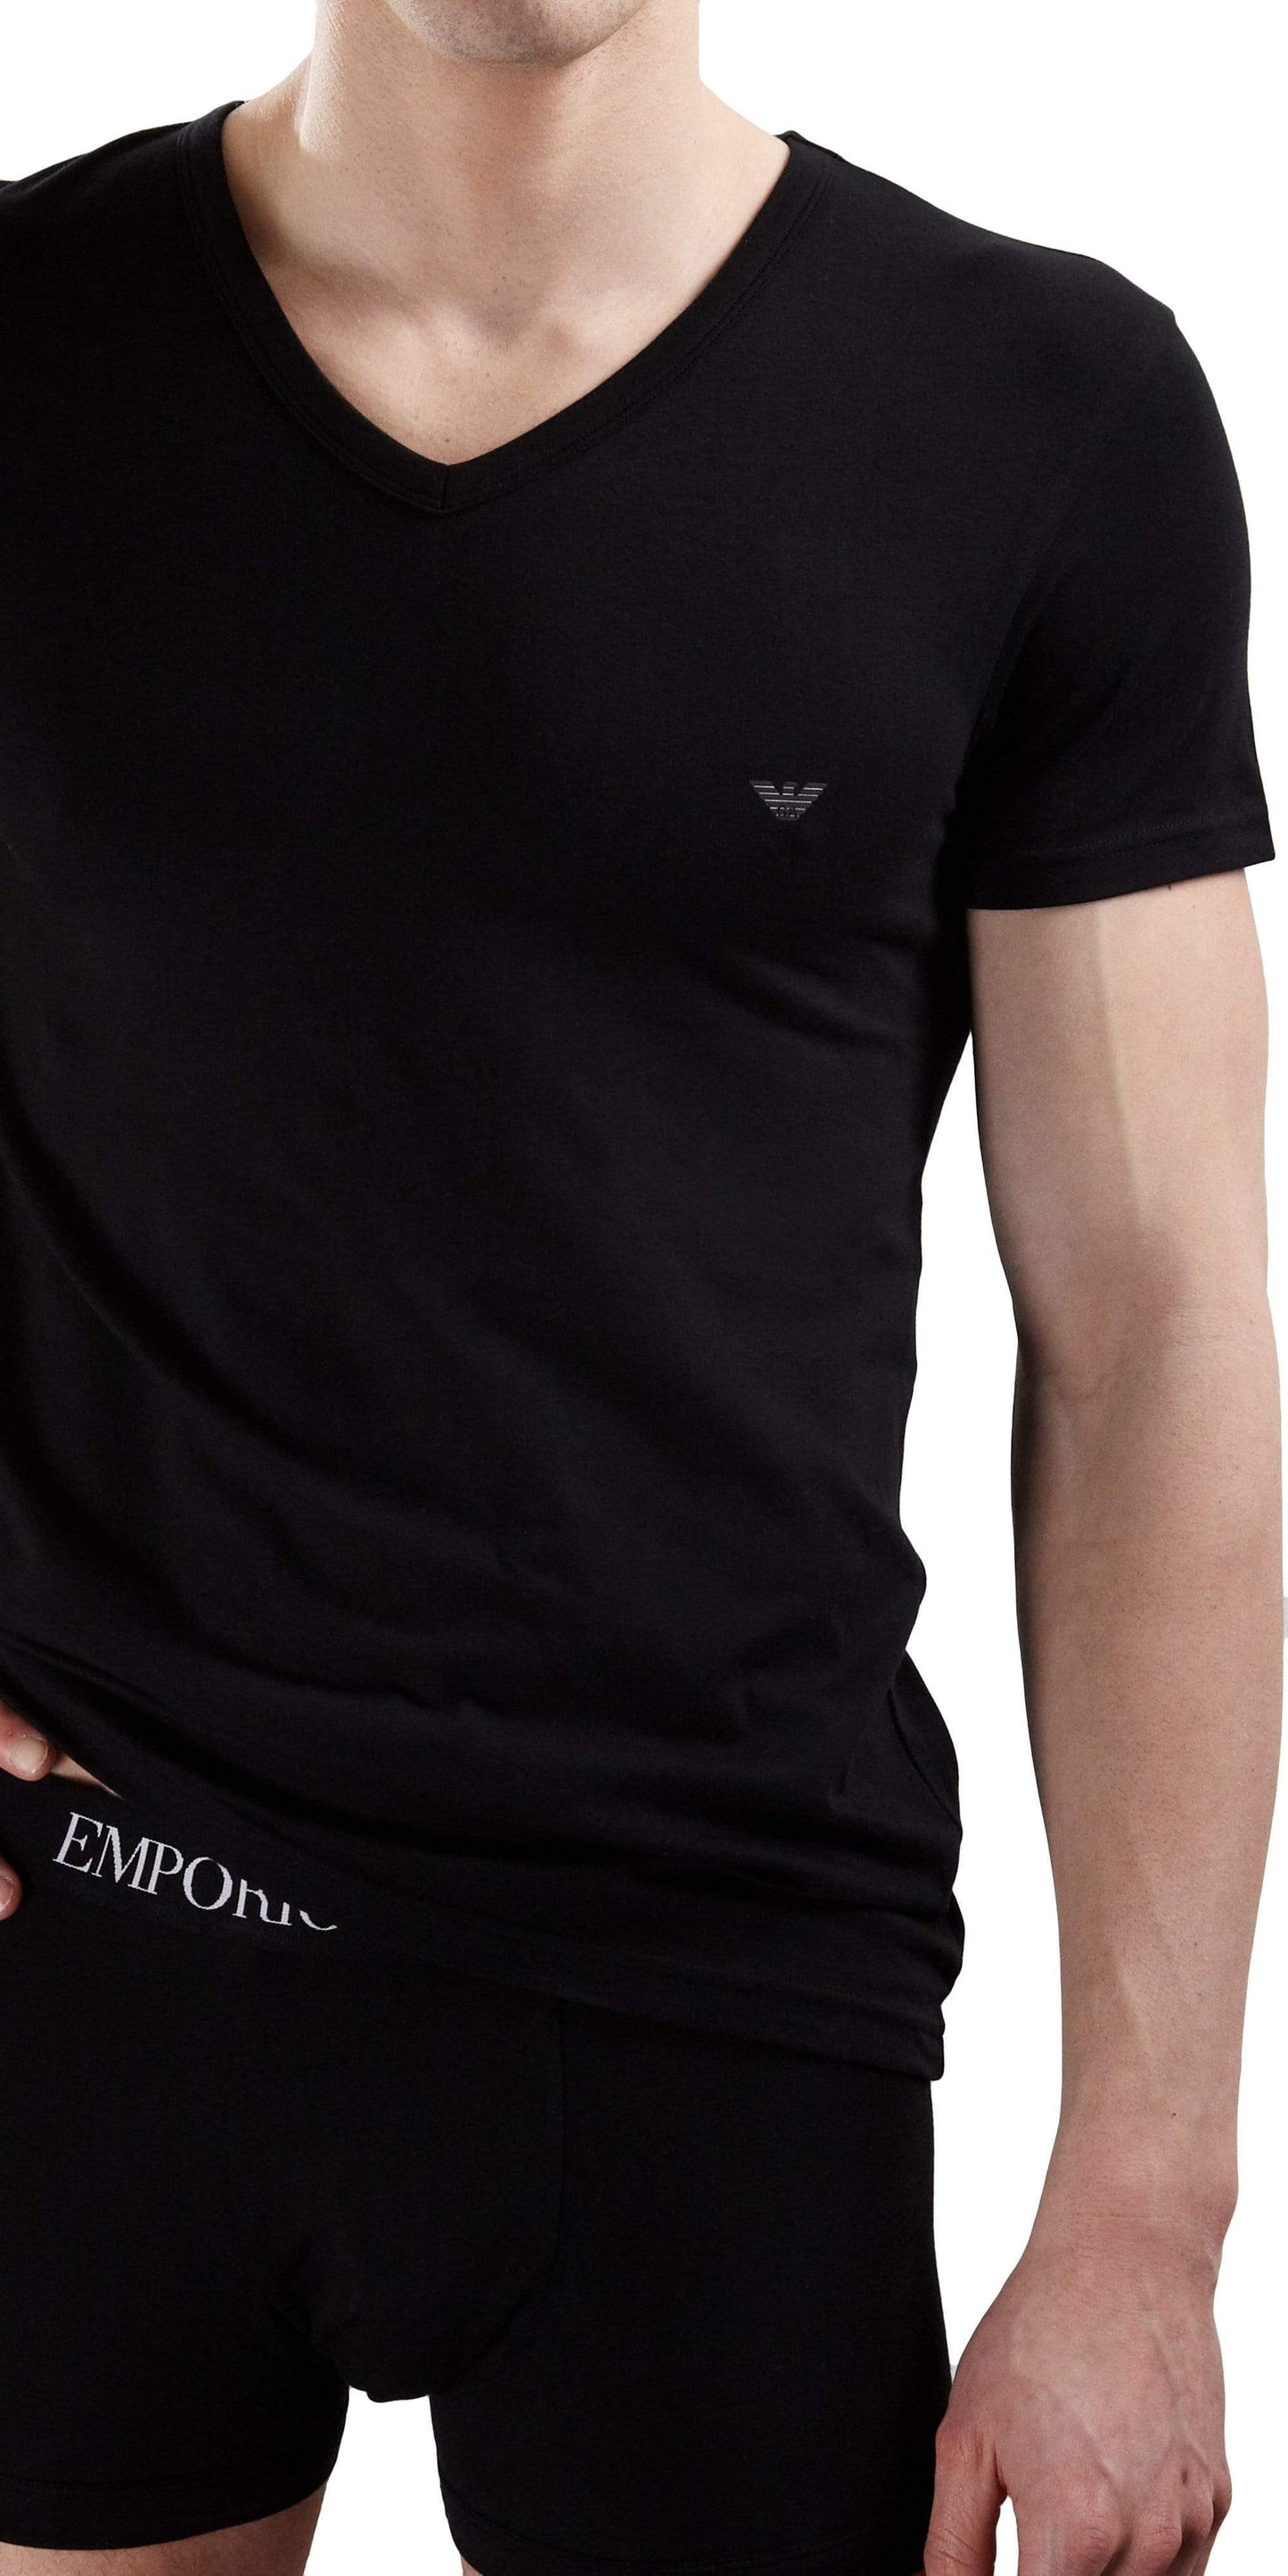 Emporio Armani V-neck Shirt Black - 110810cc718